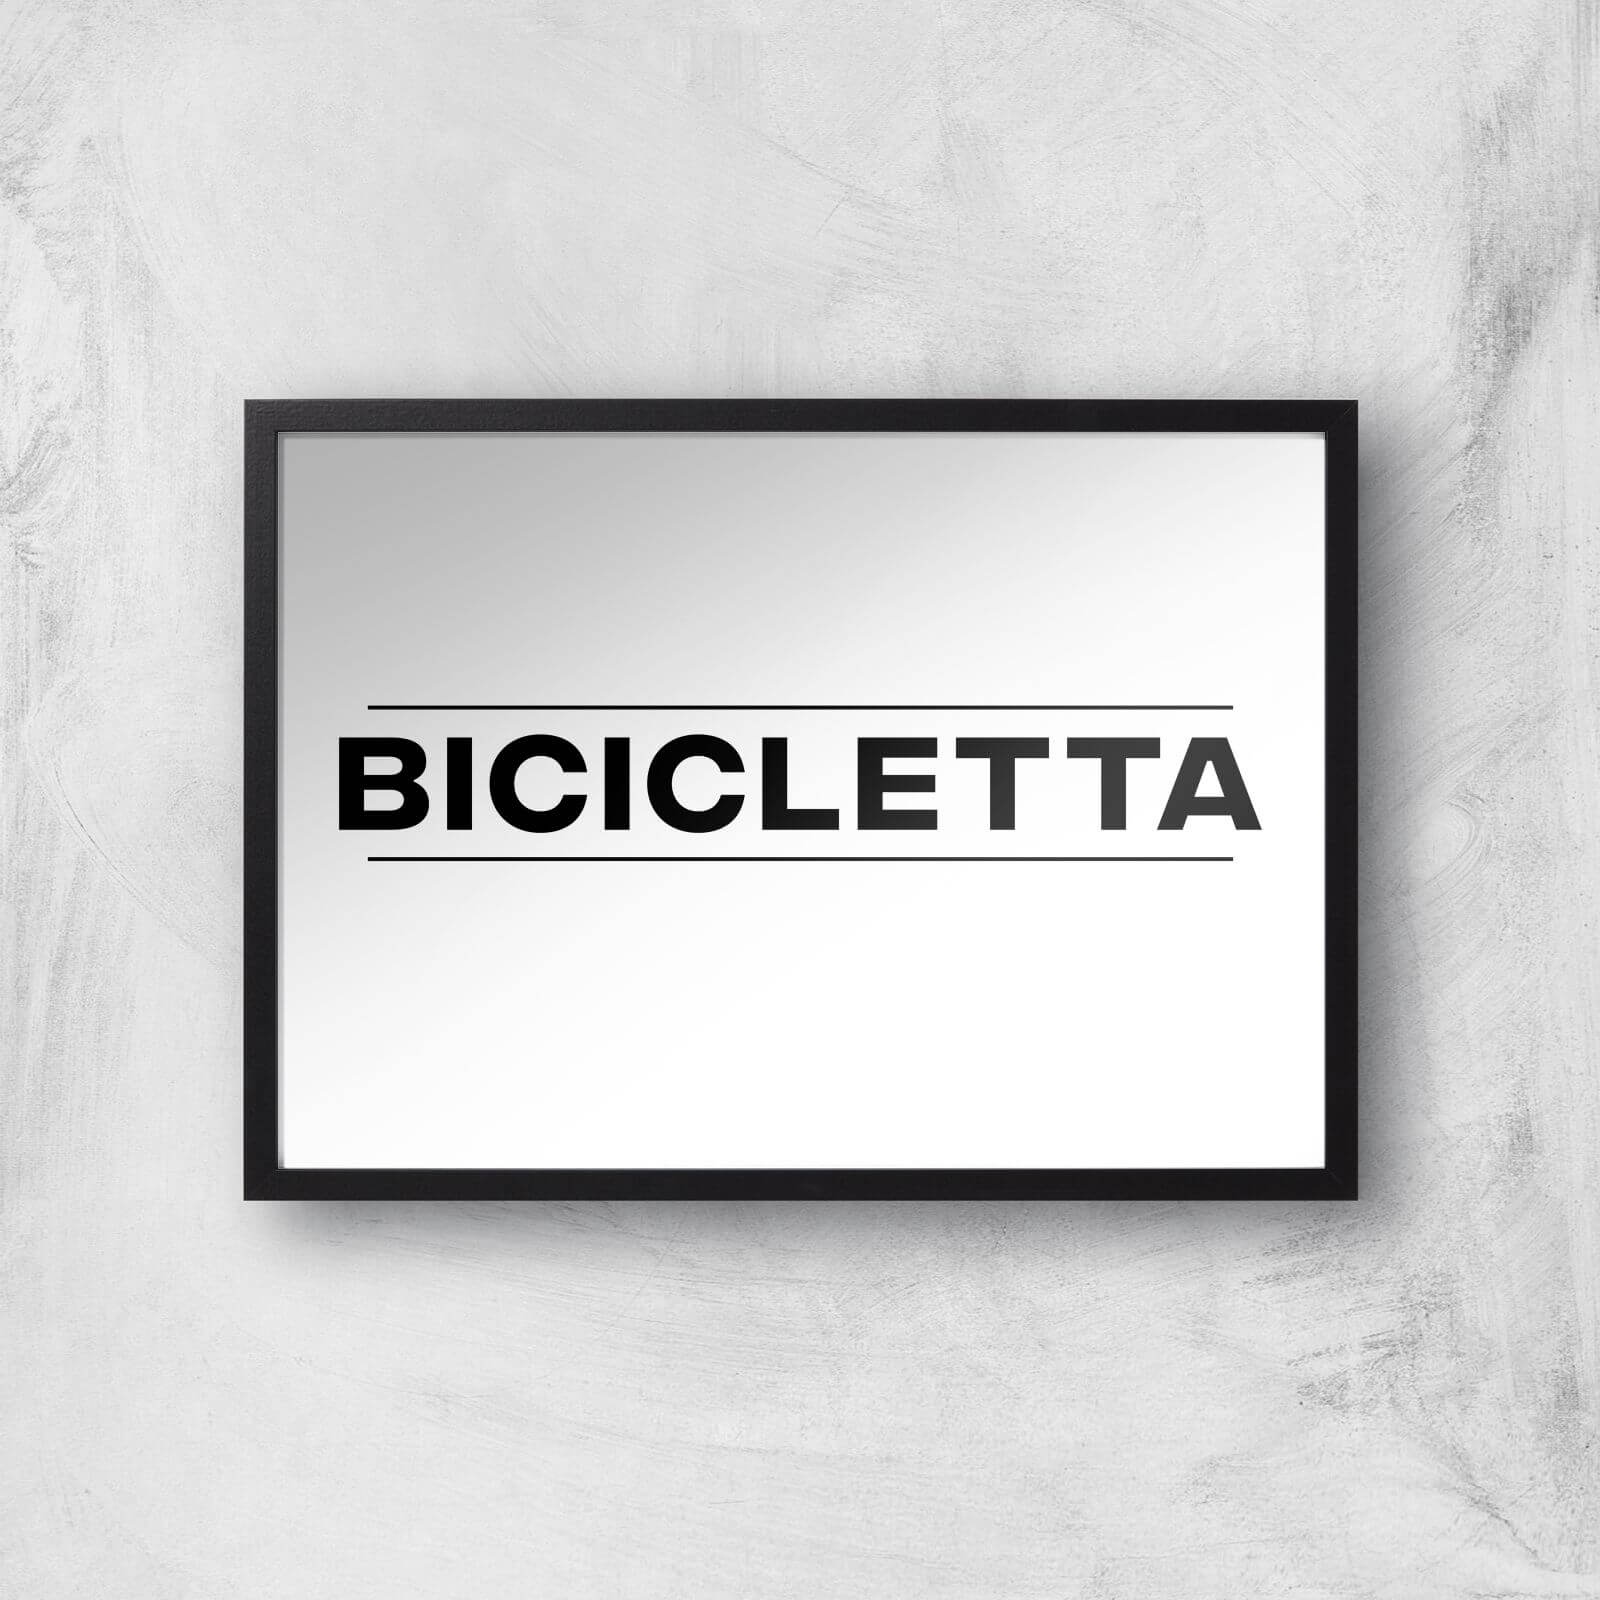 PBK Bicicletta Giclee Art Print - A4 - Wooden Frame